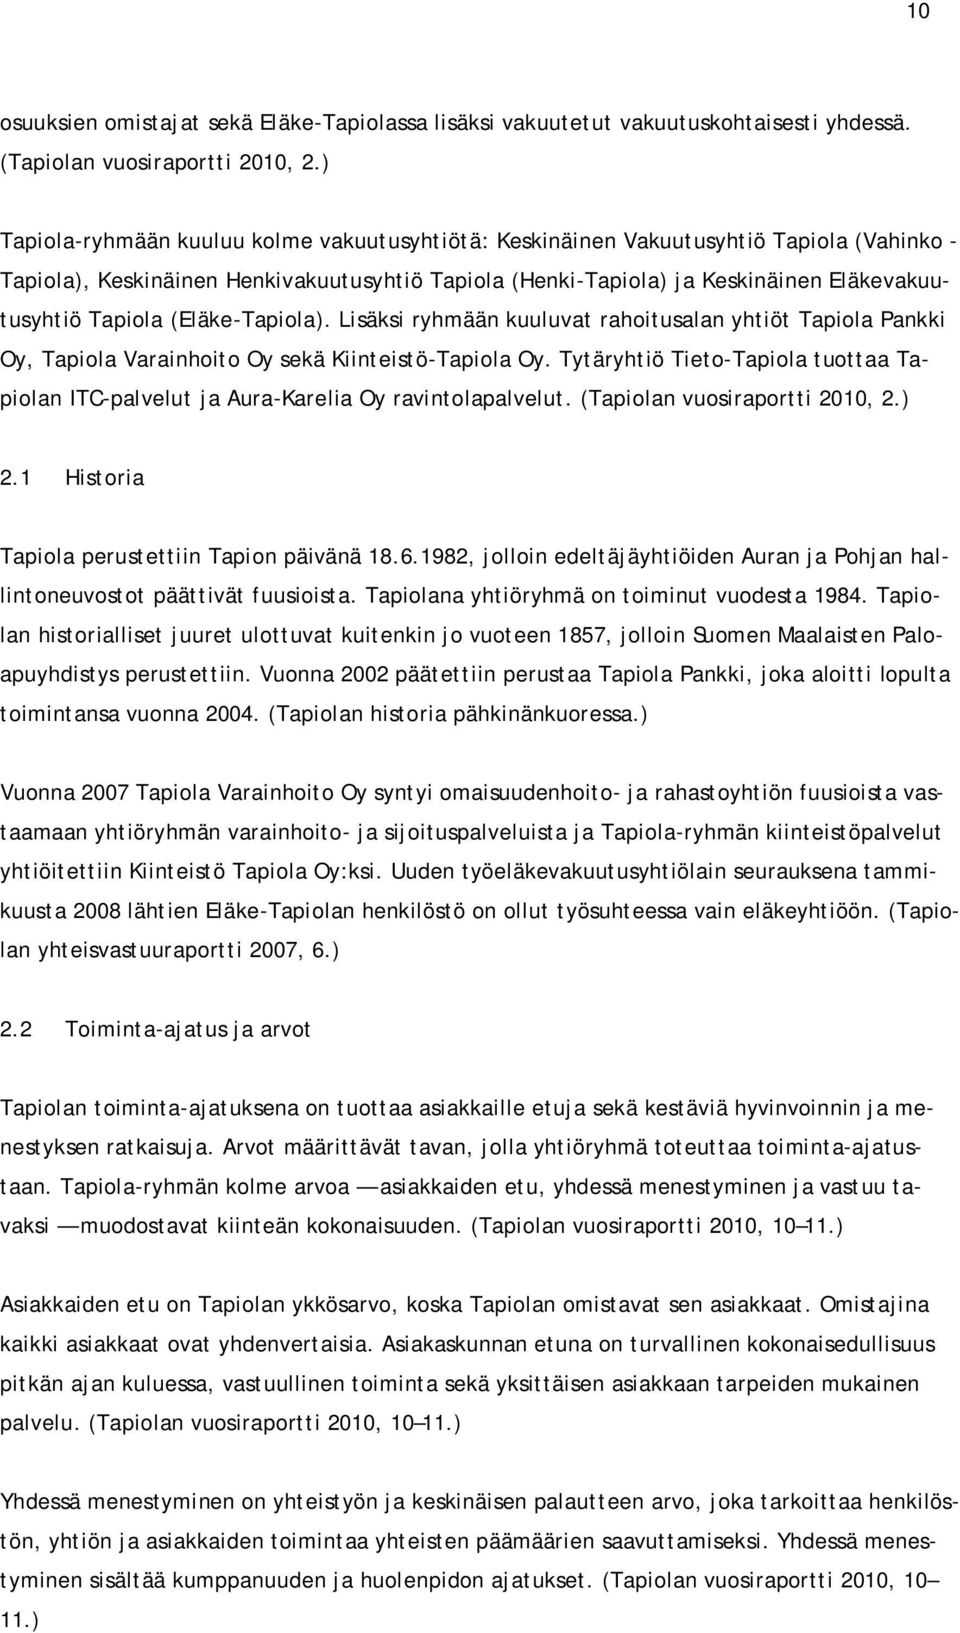 (Eläke-Tapiola). Lisäksi ryhmään kuuluvat rahoitusalan yhtiöt Tapiola Pankki Oy, Tapiola Varainhoito Oy sekä Kiinteistö-Tapiola Oy.